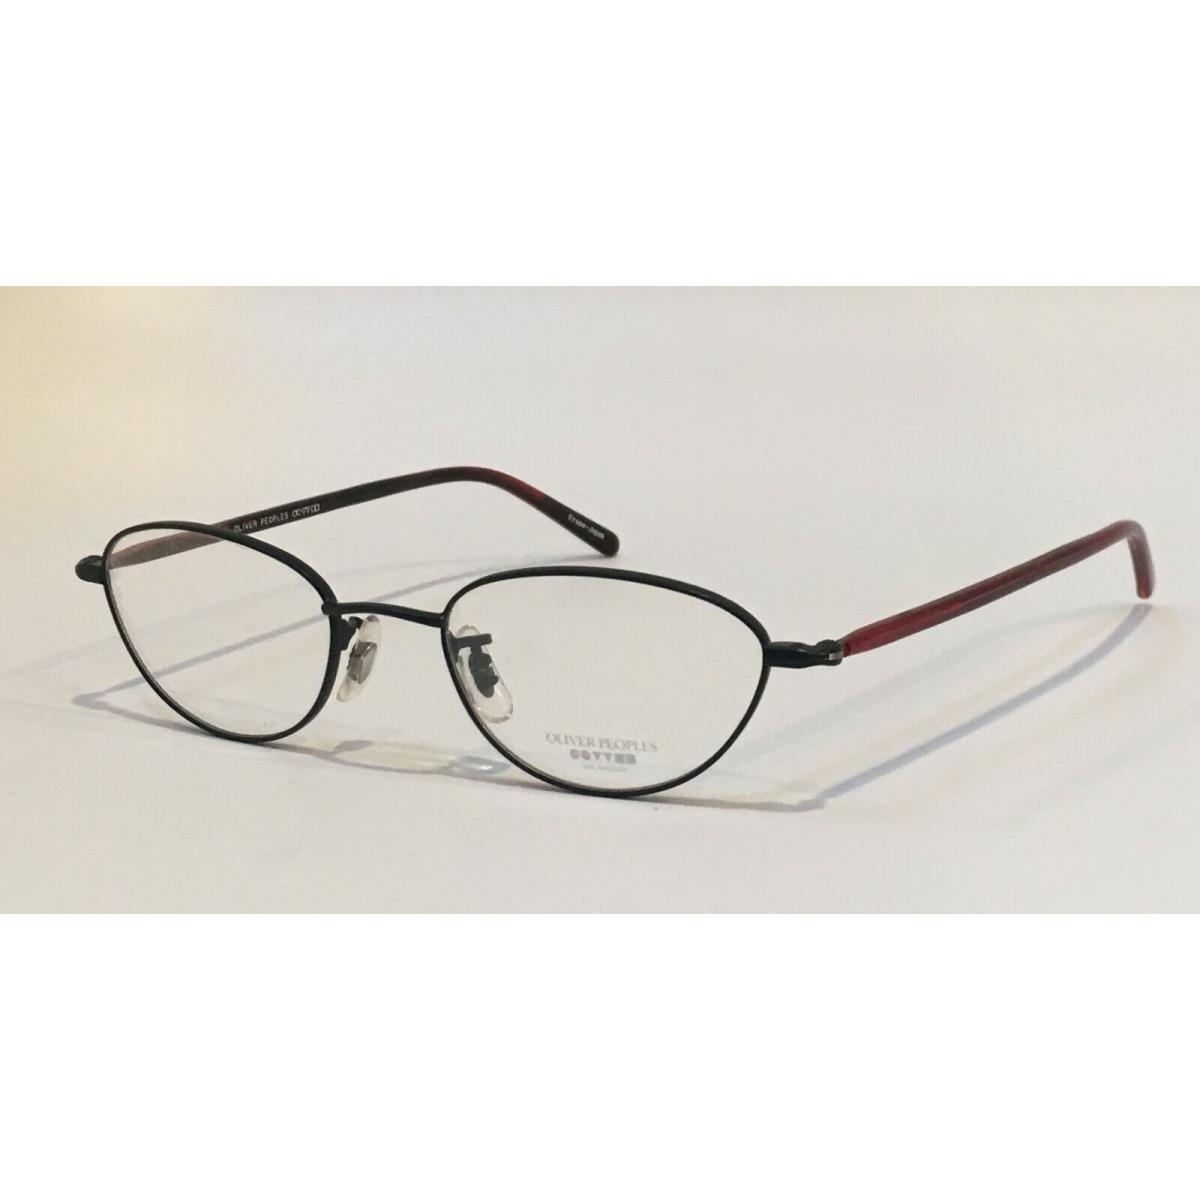 Oliver Peoples eyeglasses Black - Black Frame, Clear Lens 0